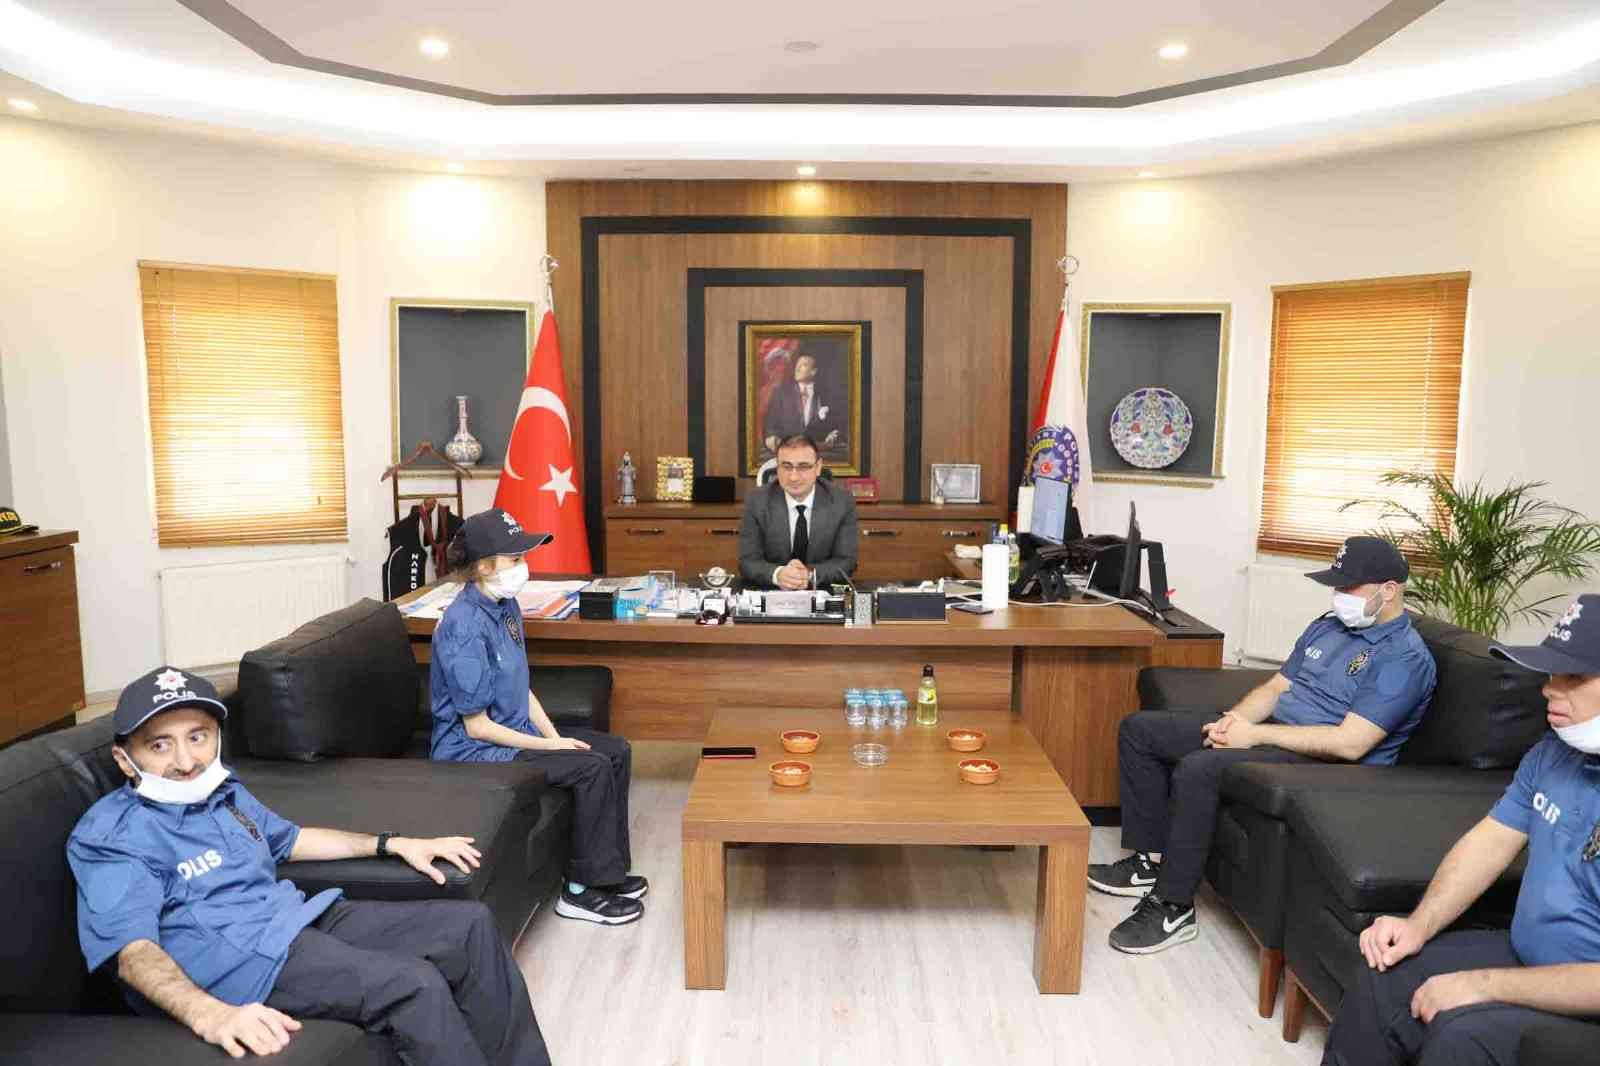 Türk Polis Teşkilatı’nın 177. yılı dolayısıyla düzenlenen etkinlikte Bağcılar Belediyesi Feyzullah Kıyıklık Engelliler Sarayı kursiyerleri, bir ...